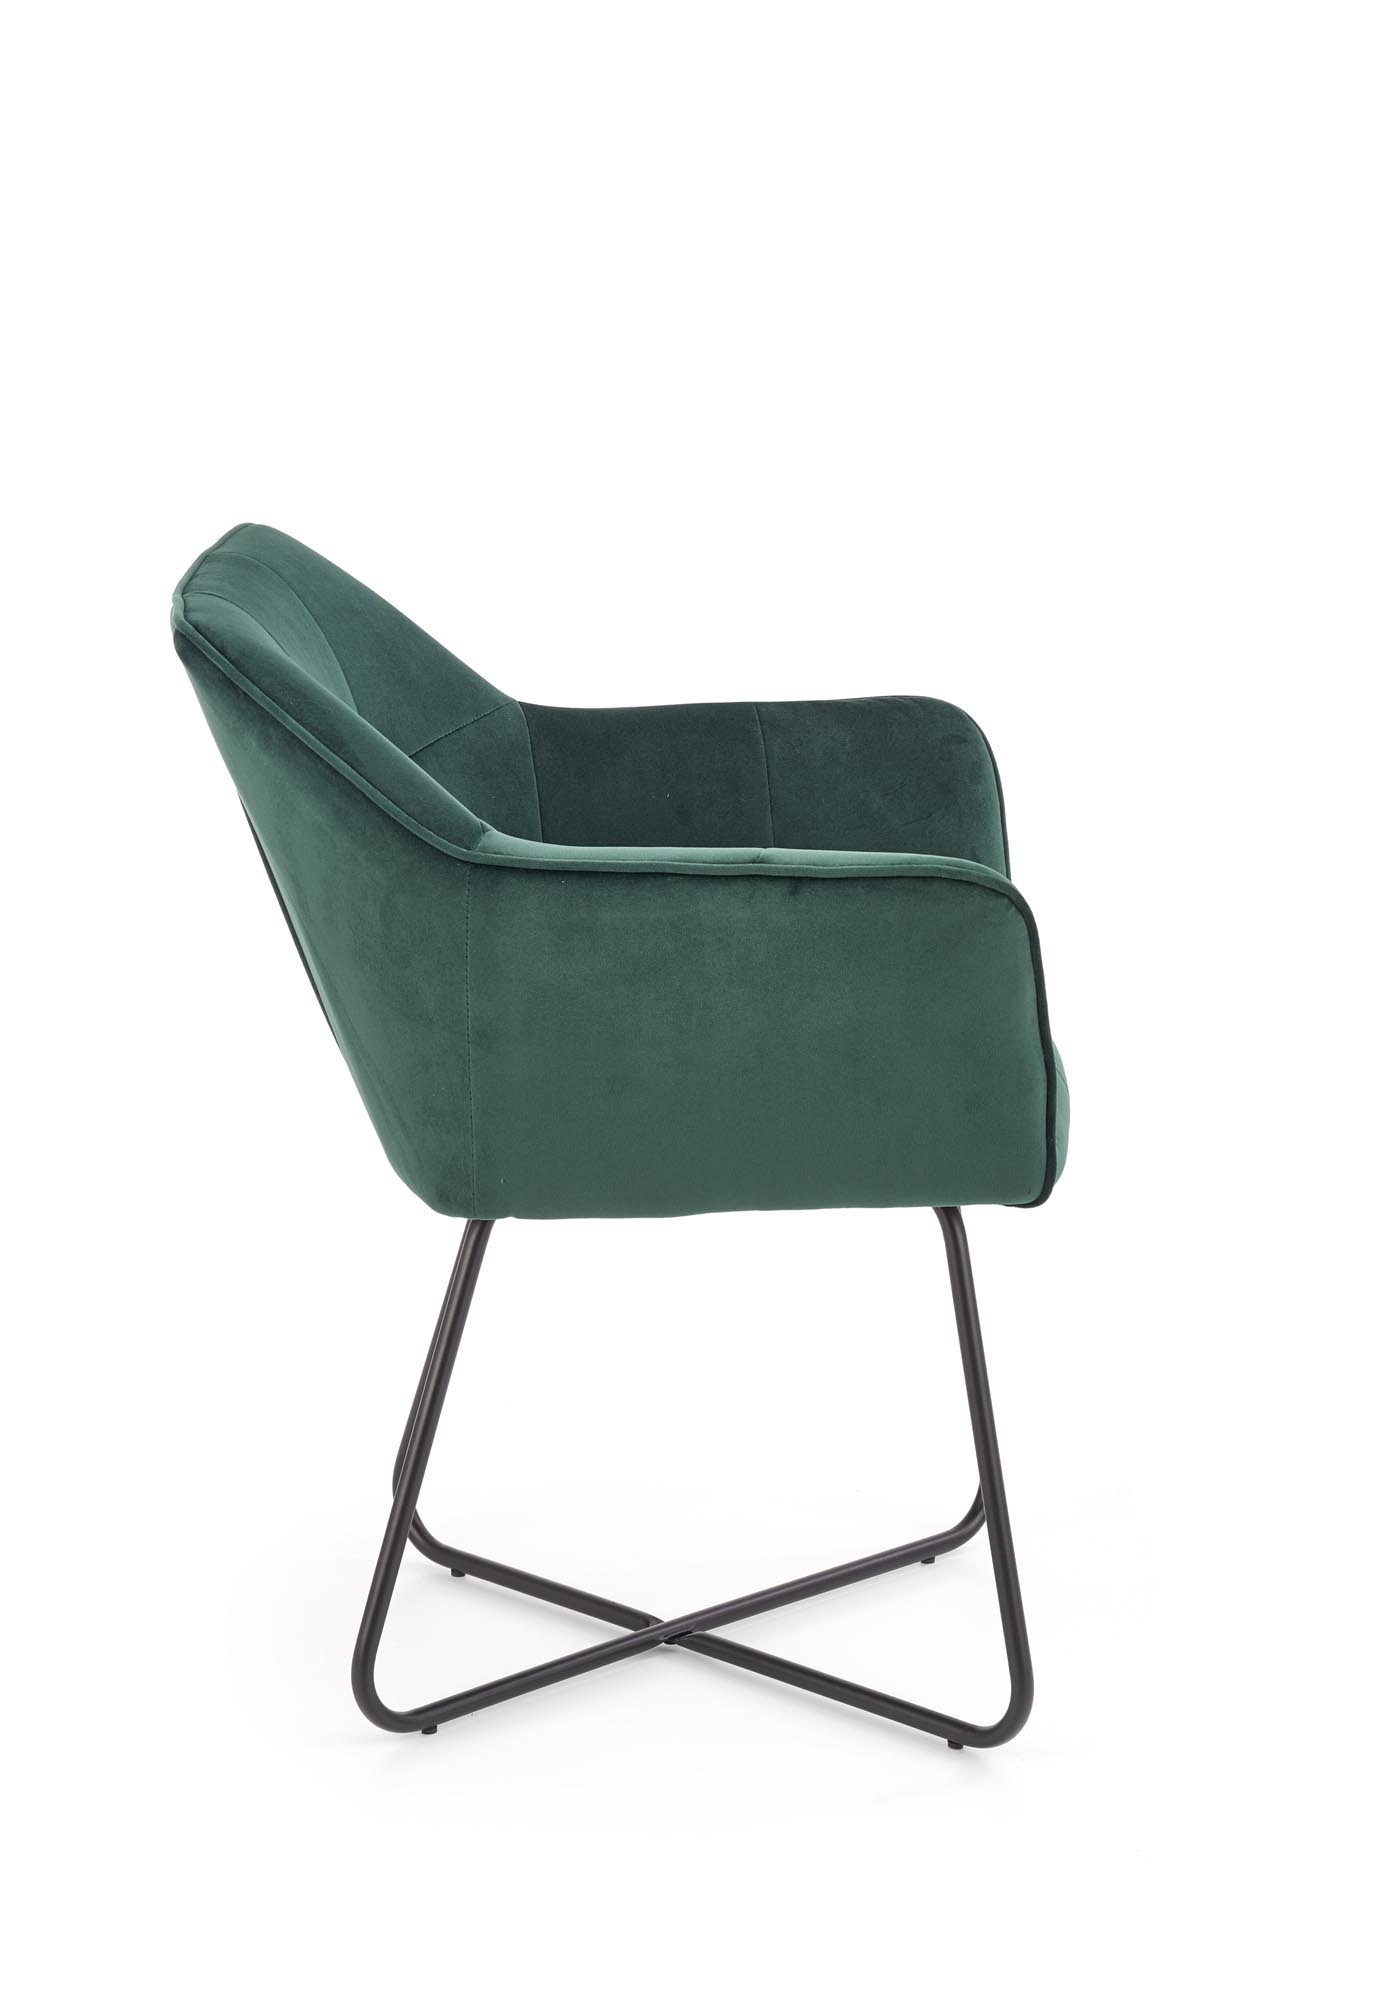 K377 krzesło ciemny zielony k377 krzesło ciemny zielony